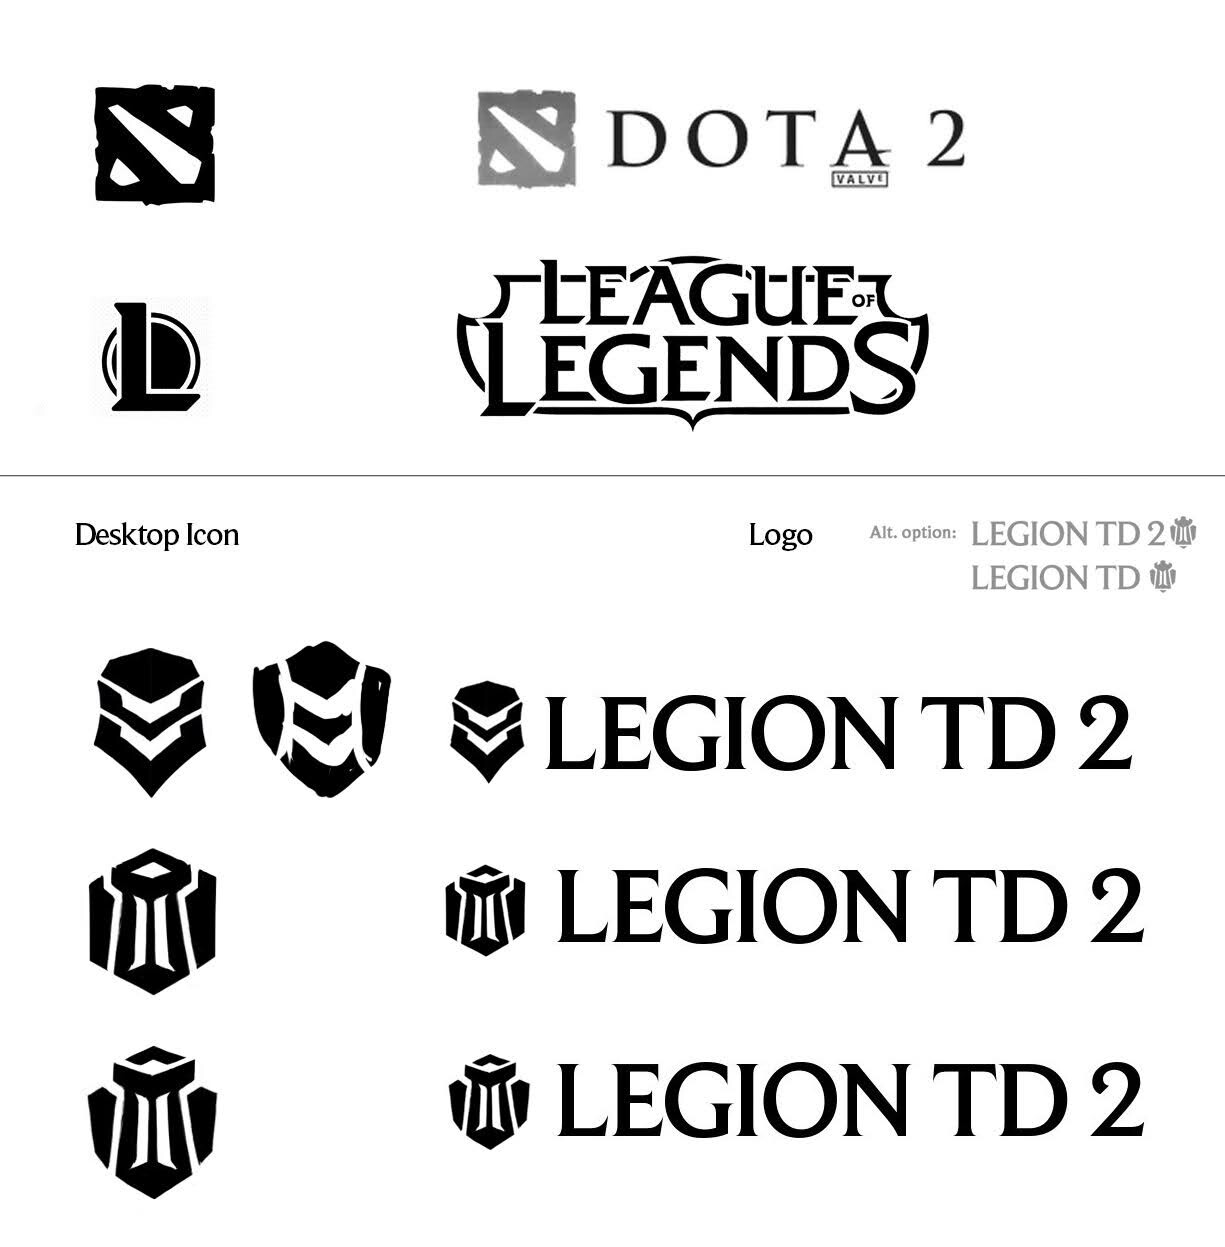 dota 2 logo white